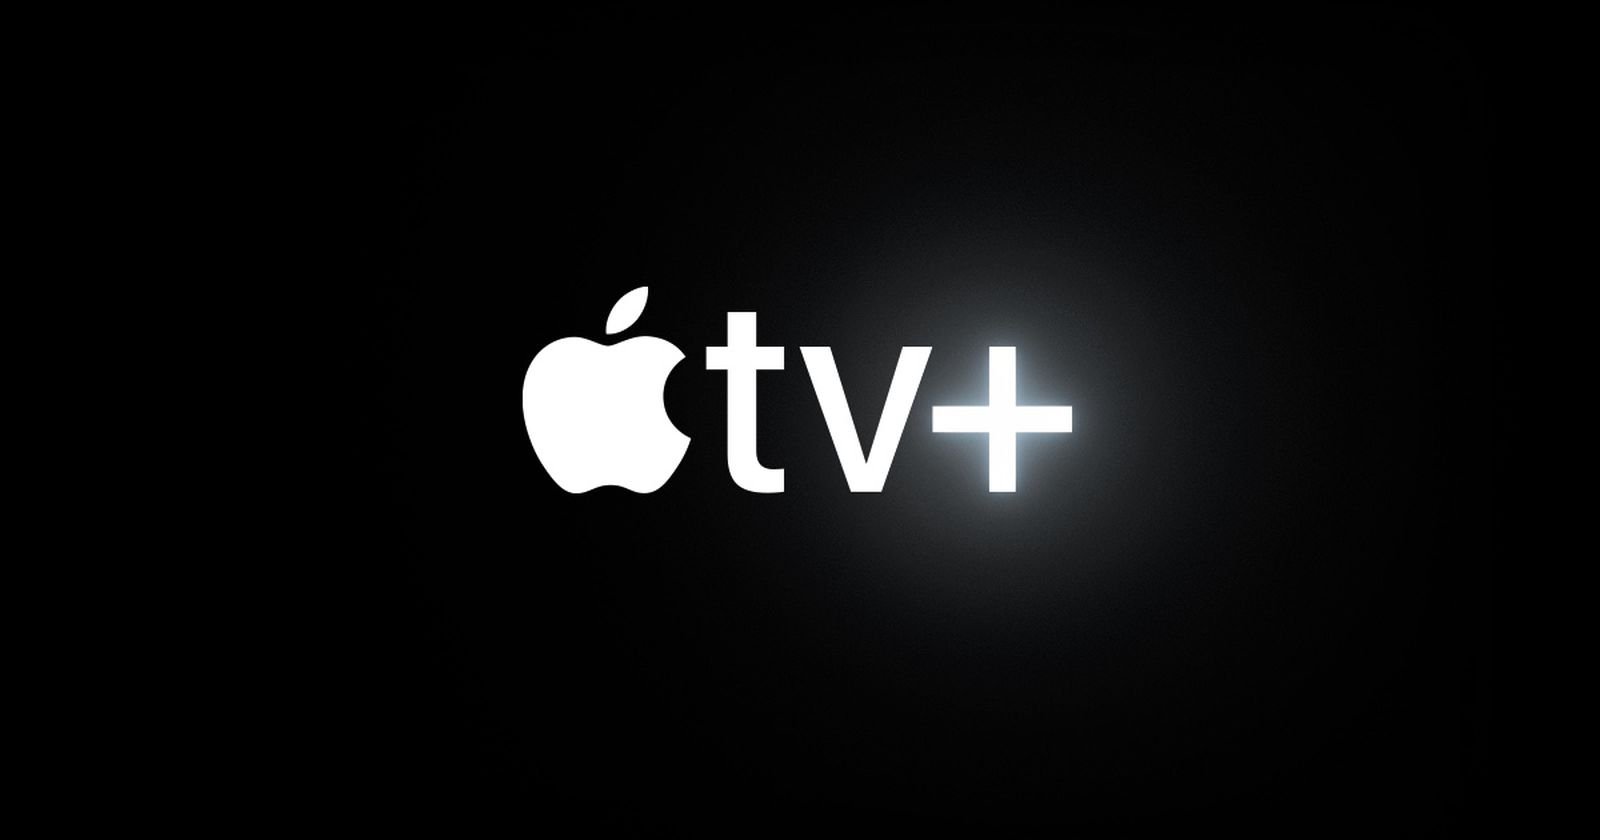 apple-tv-plus-banner.jpg